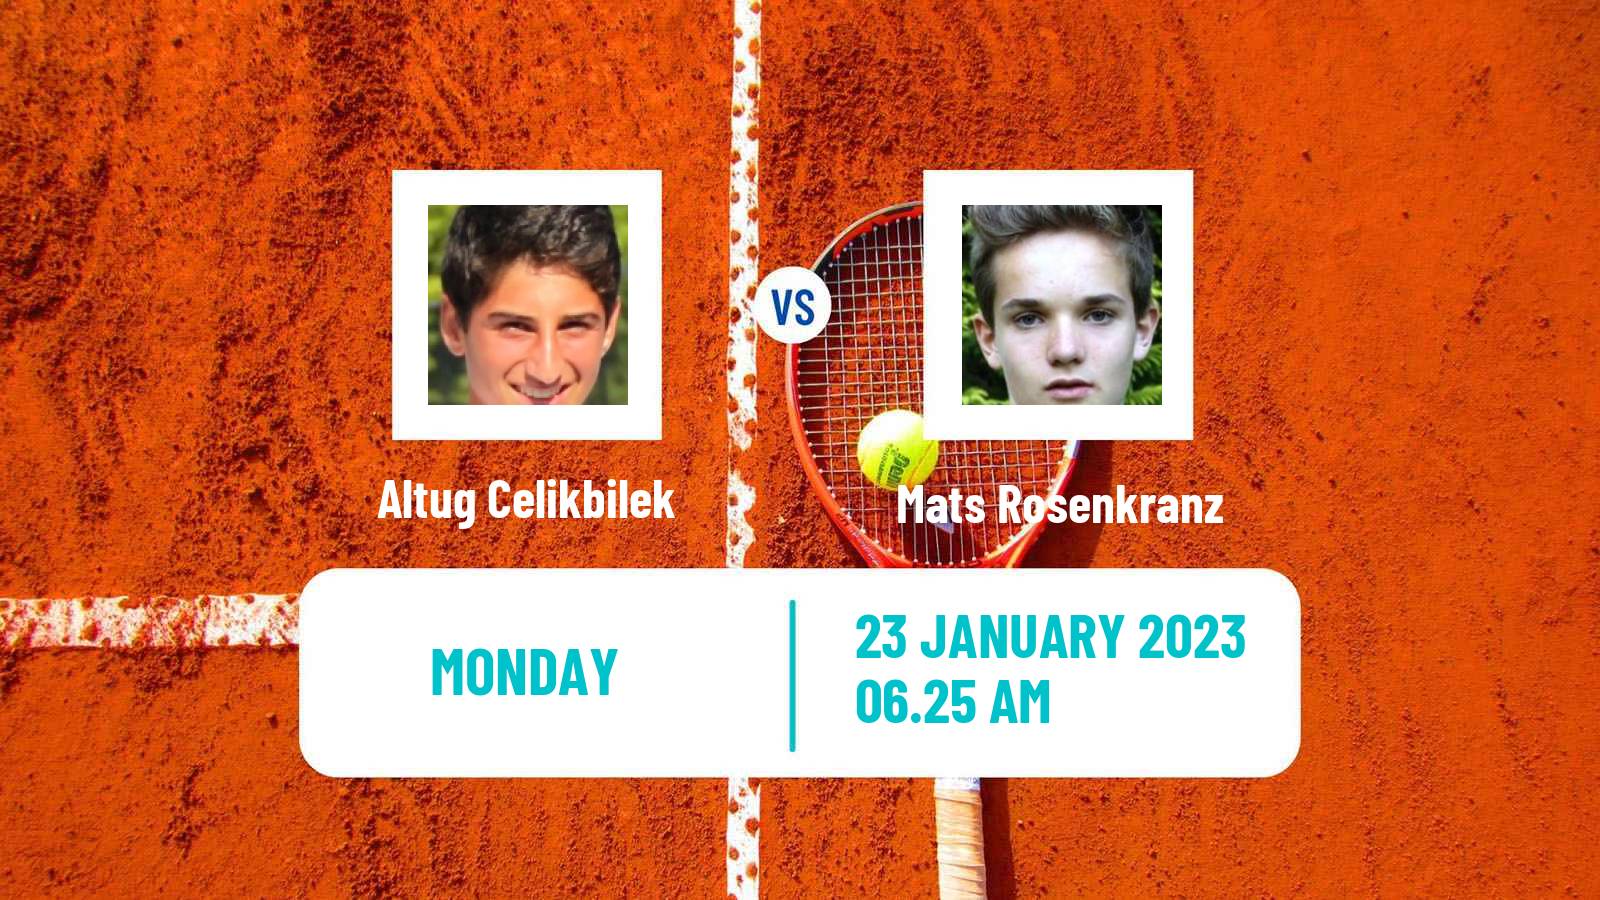 Tennis ATP Challenger Altug Celikbilek - Mats Rosenkranz